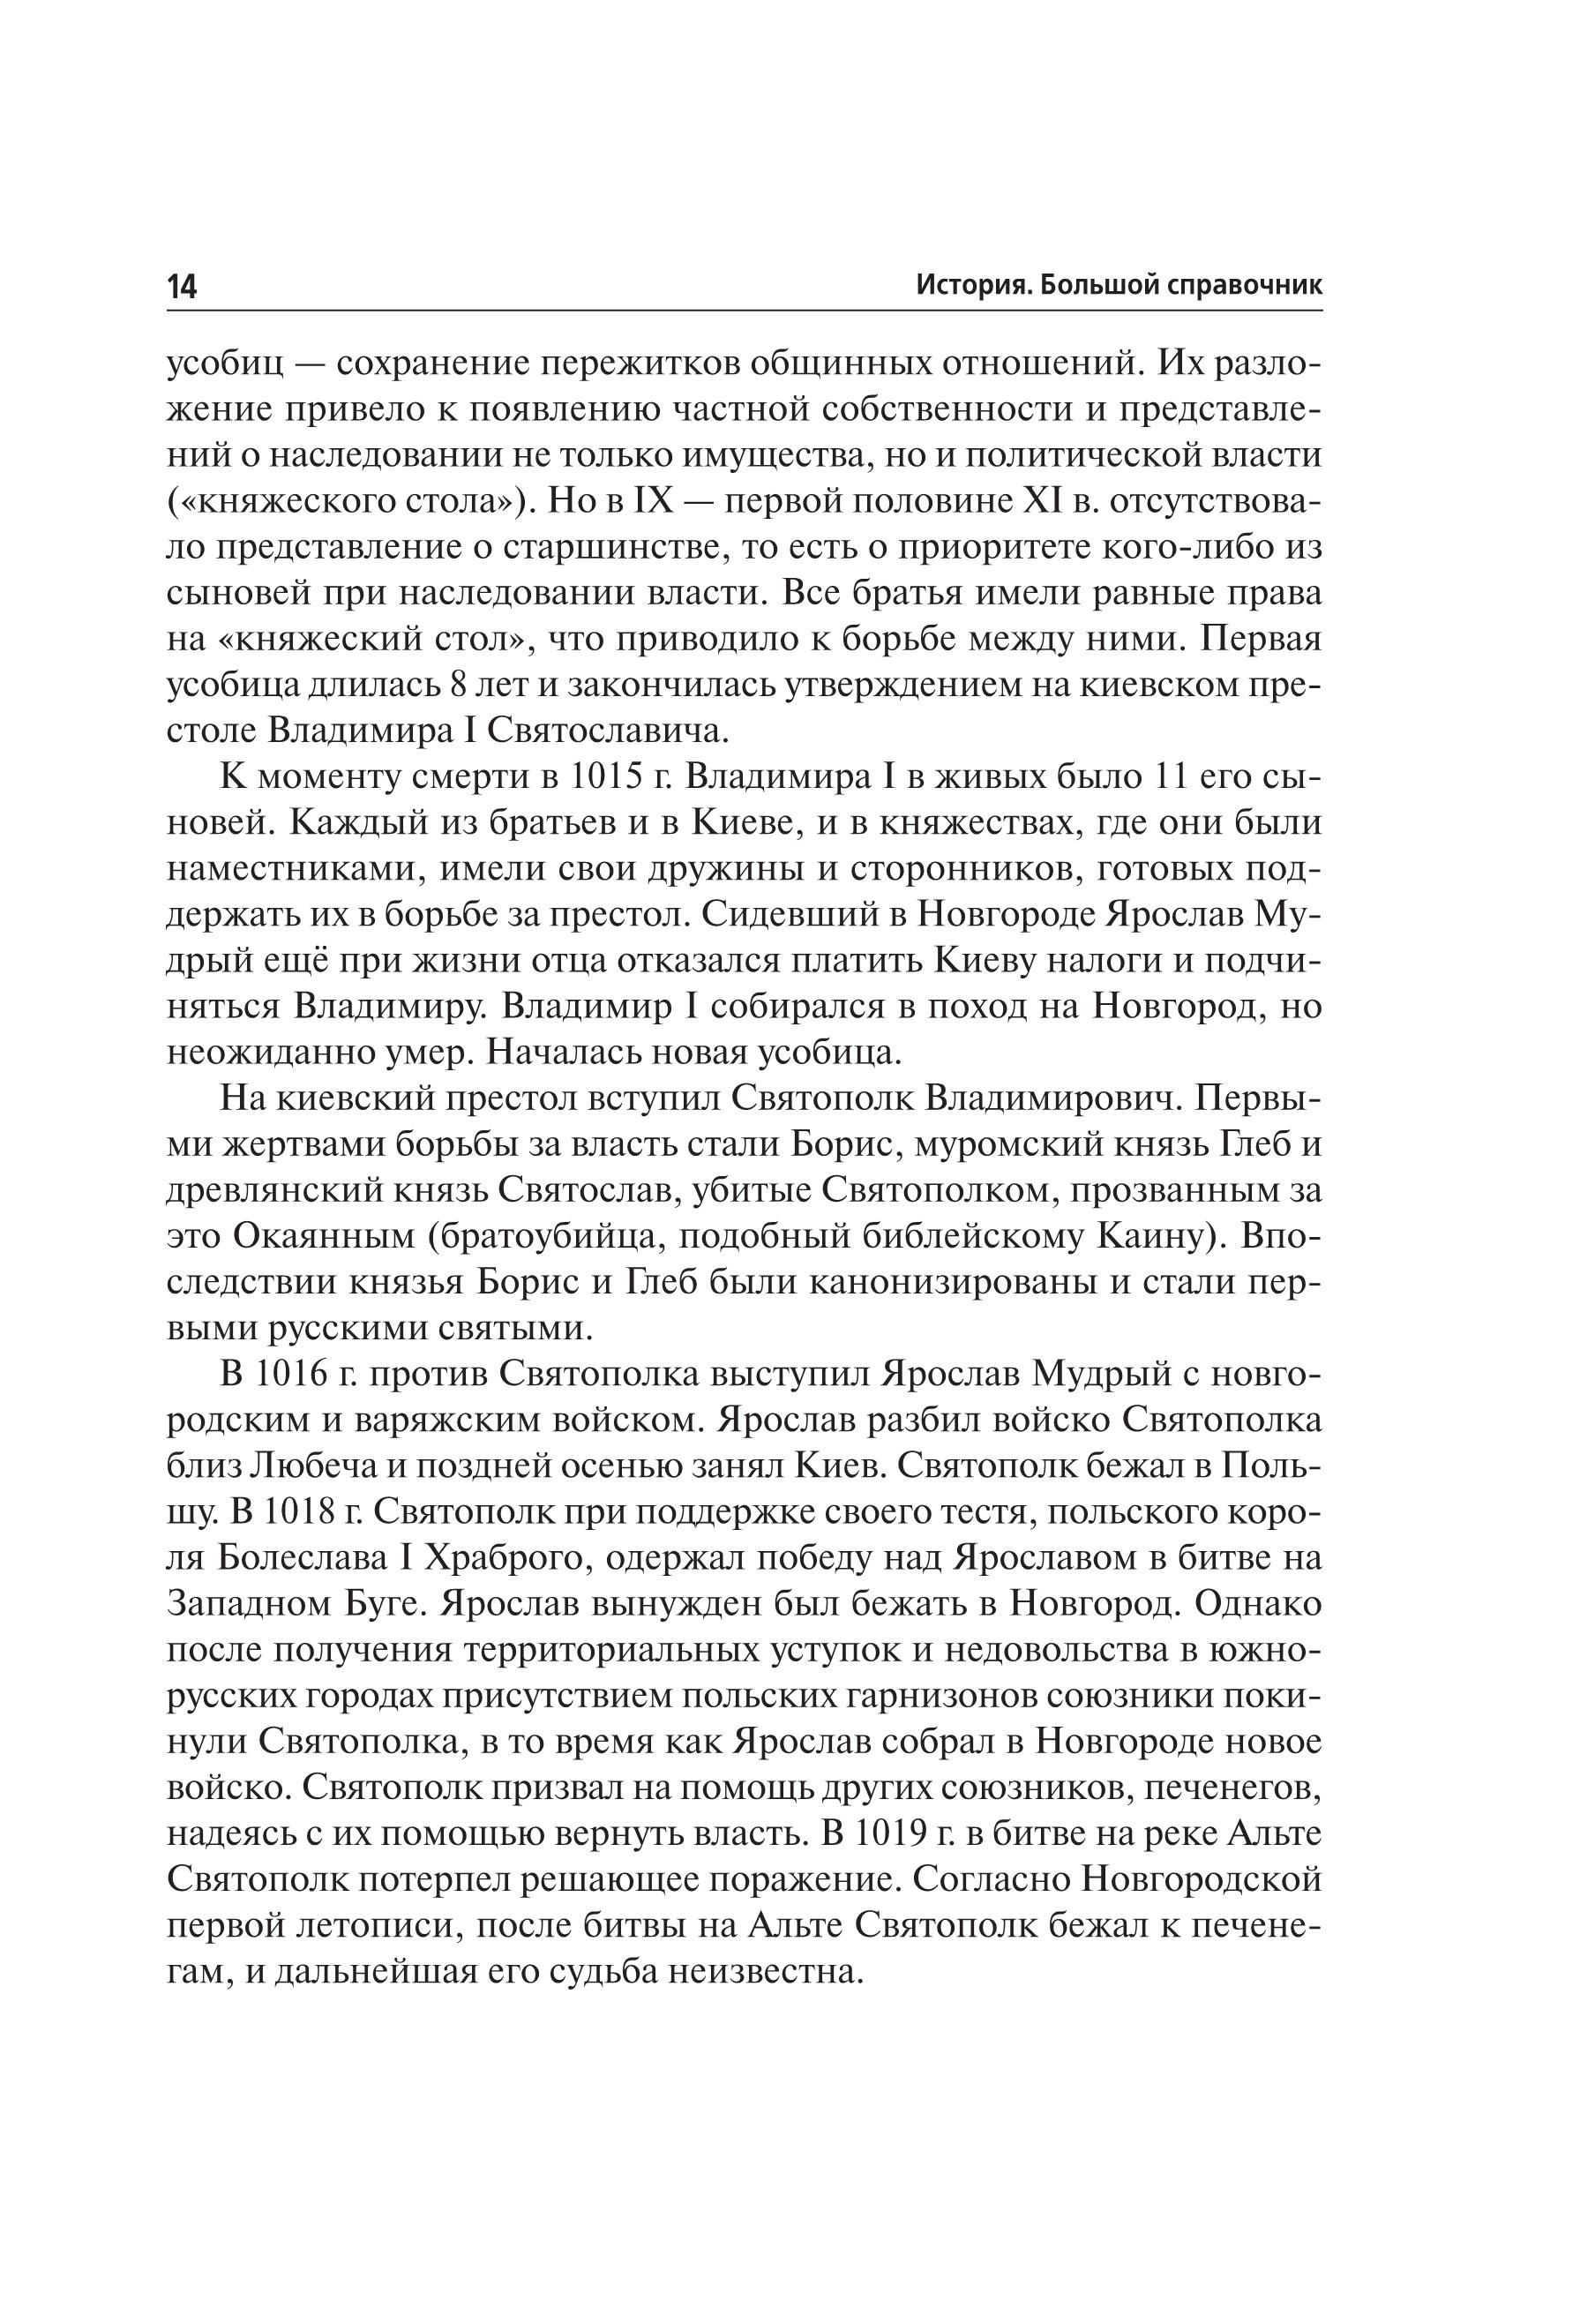 История. Большой справочник для подготовки к ЕГЭ и ОГЭ. 5-е изд.